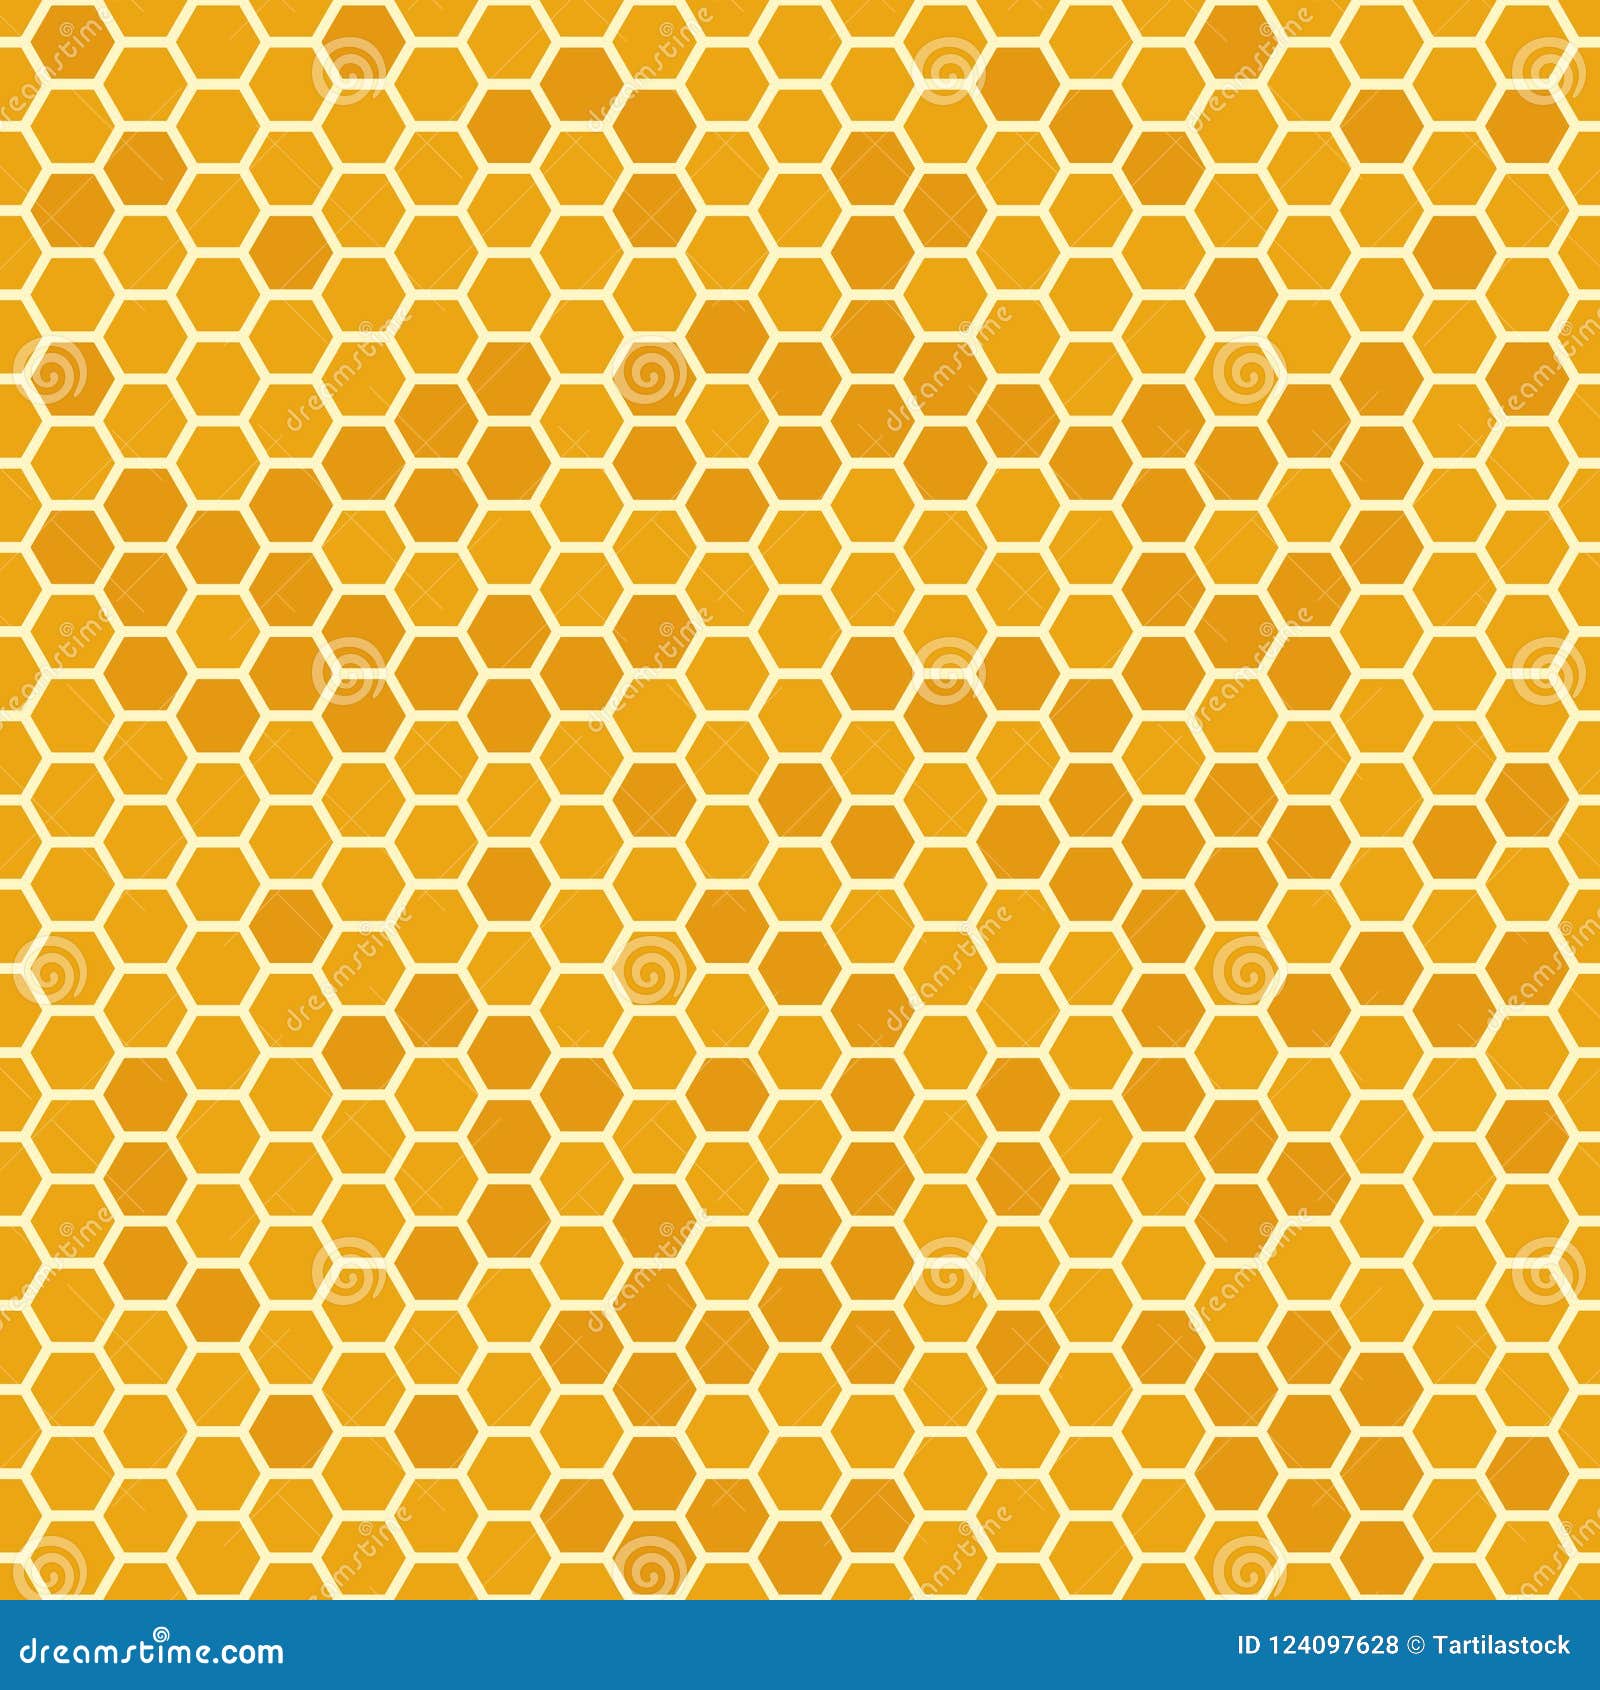 panal hexagonal amarillo brillante con miel, ilustración de estilo